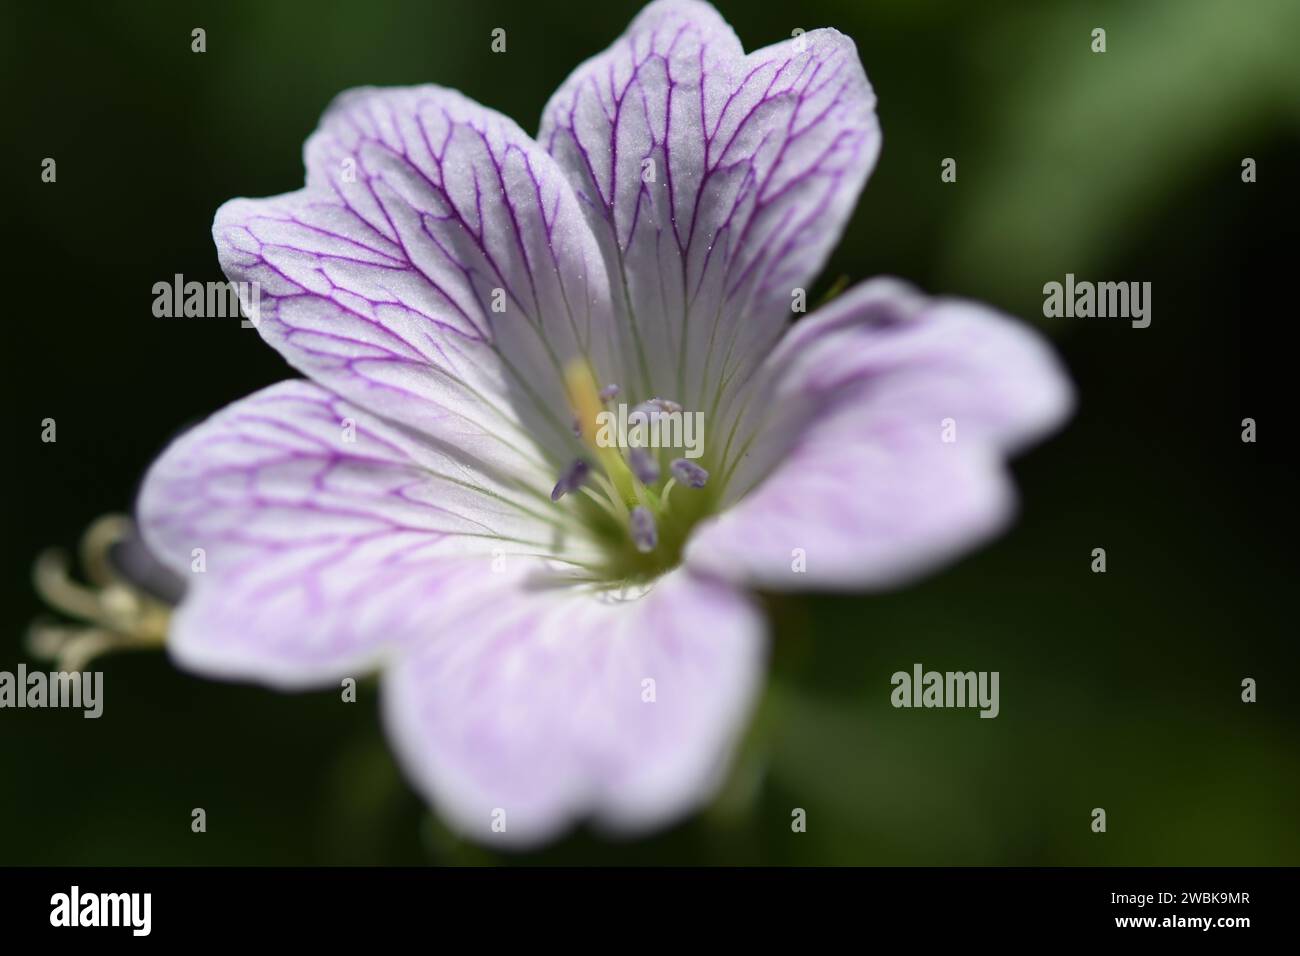 Close up of a Pencilled Cranesbill Geranium Versicolor flower Stock Photo